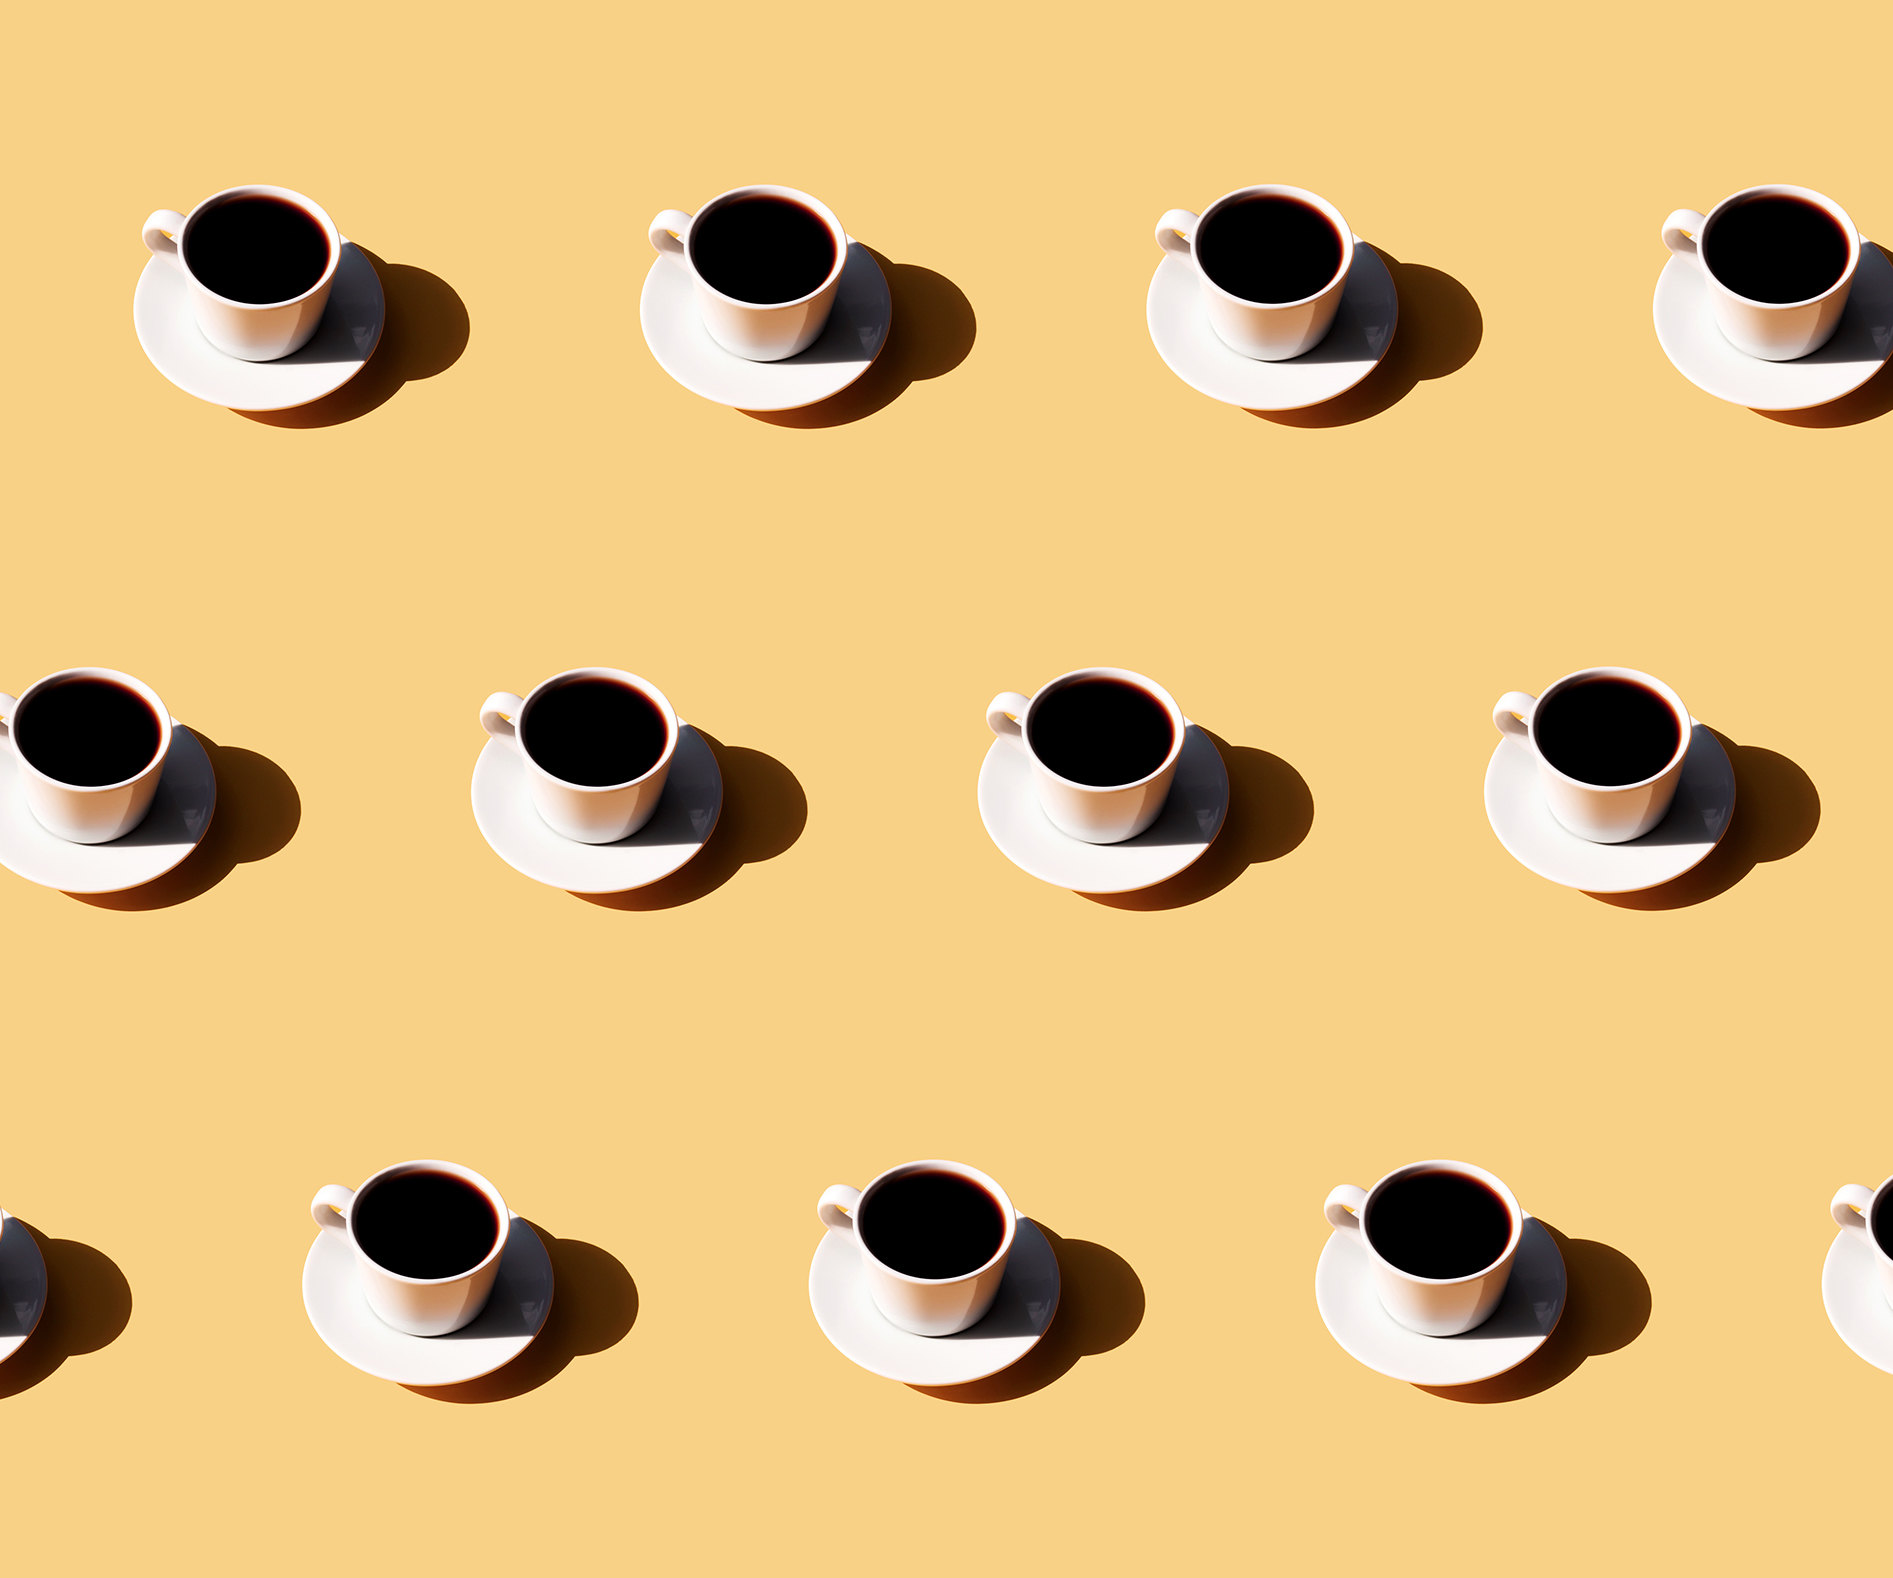 Полезен даже при болезнях: 9 уникальных преимуществ кофе